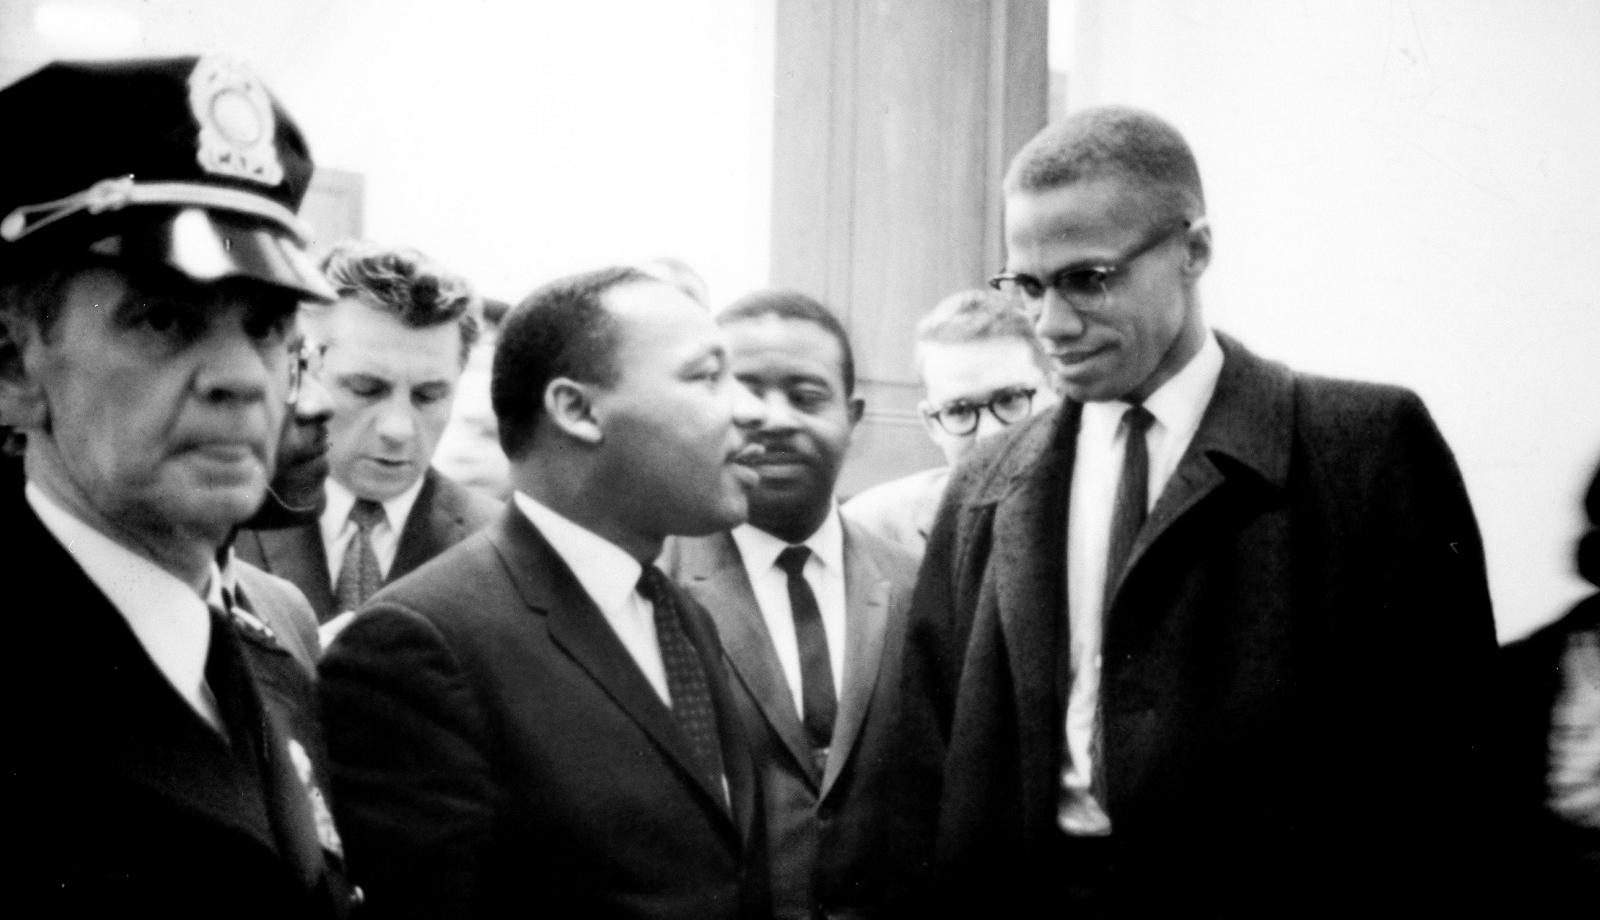 Единственная встреча Малкольма Икса и Мартина Лютера Кинга, состоявшаяся 26 марта 1964 года.